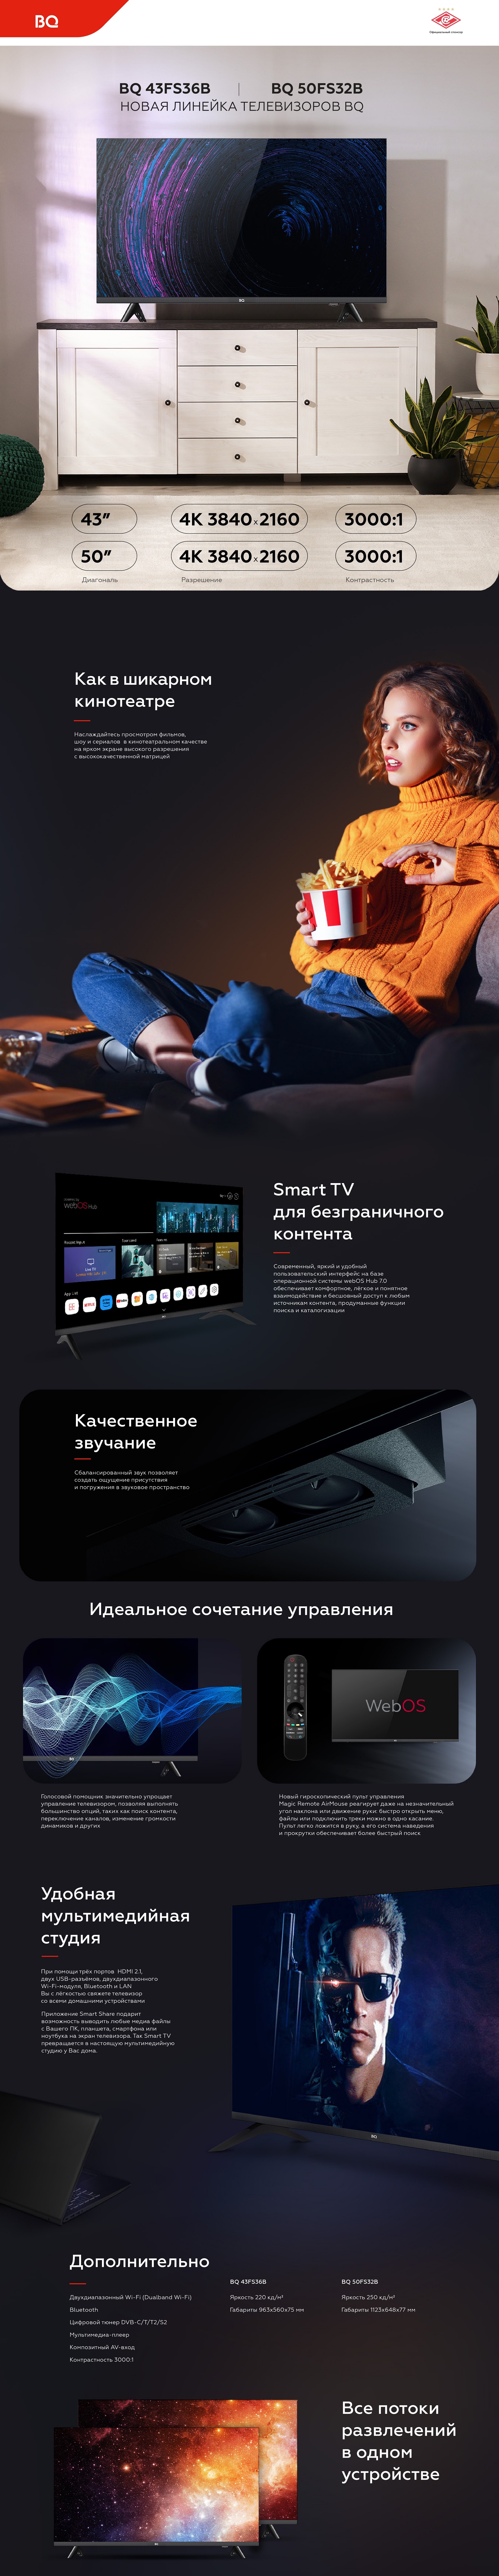 Телевизор BQ 50FS32B купить в Красноярске